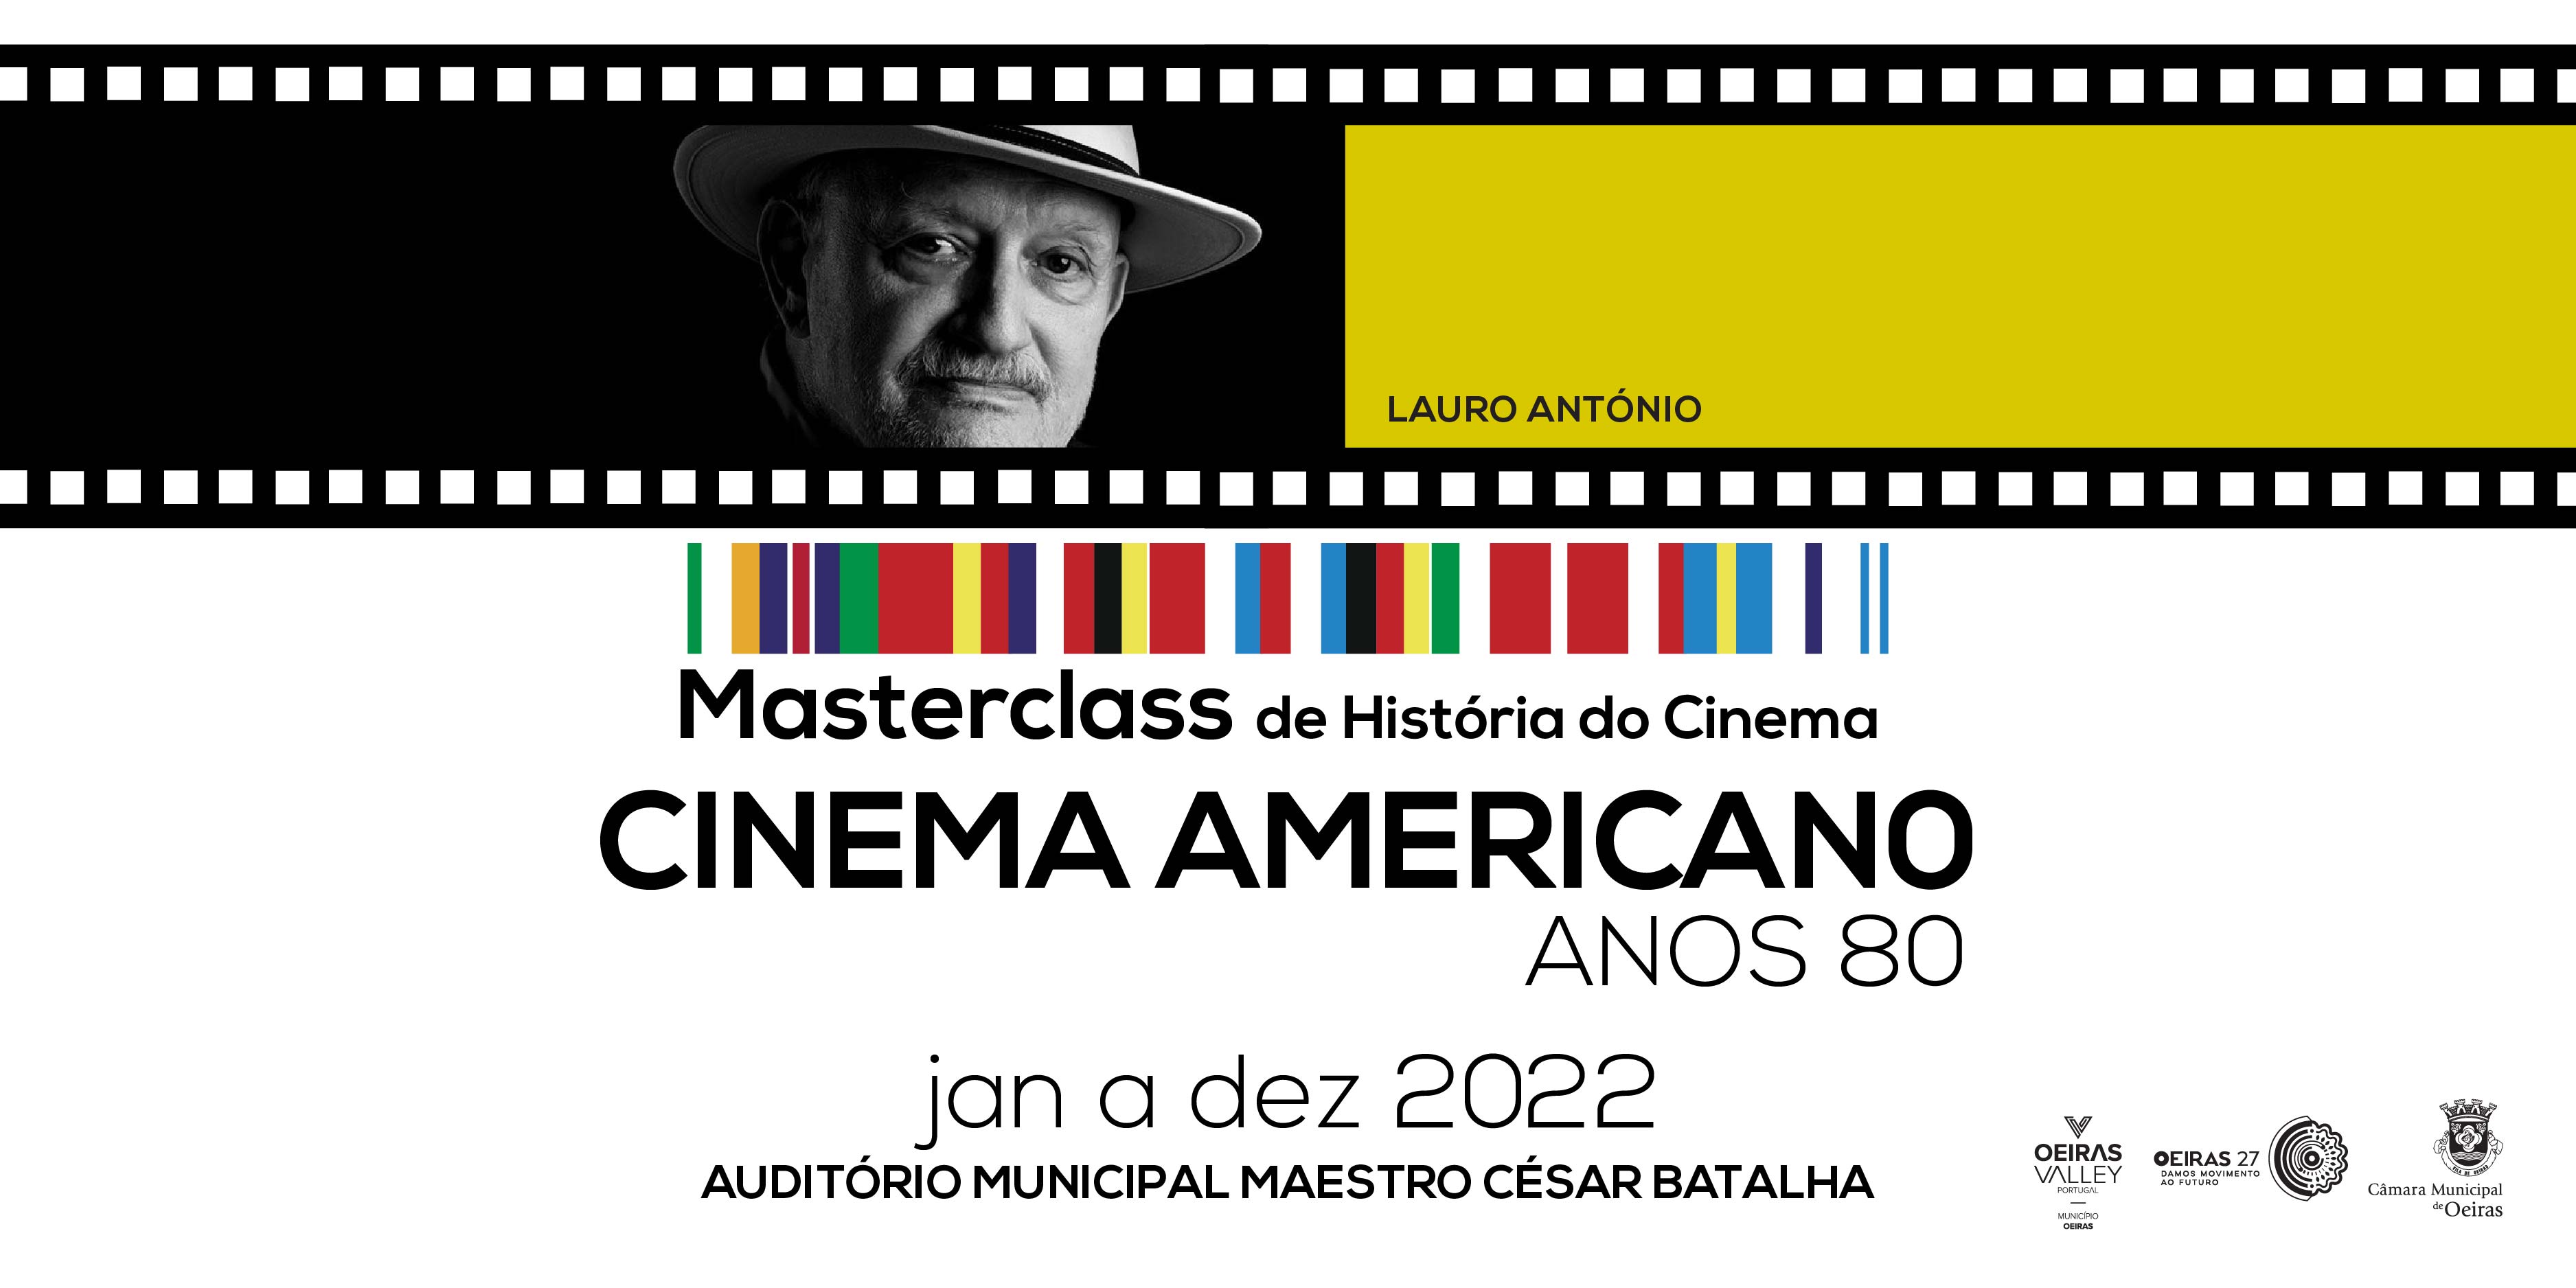 Oeiras homenageia Lauro António com a continuidade do projeto 'Masterclass de História do Cinema'